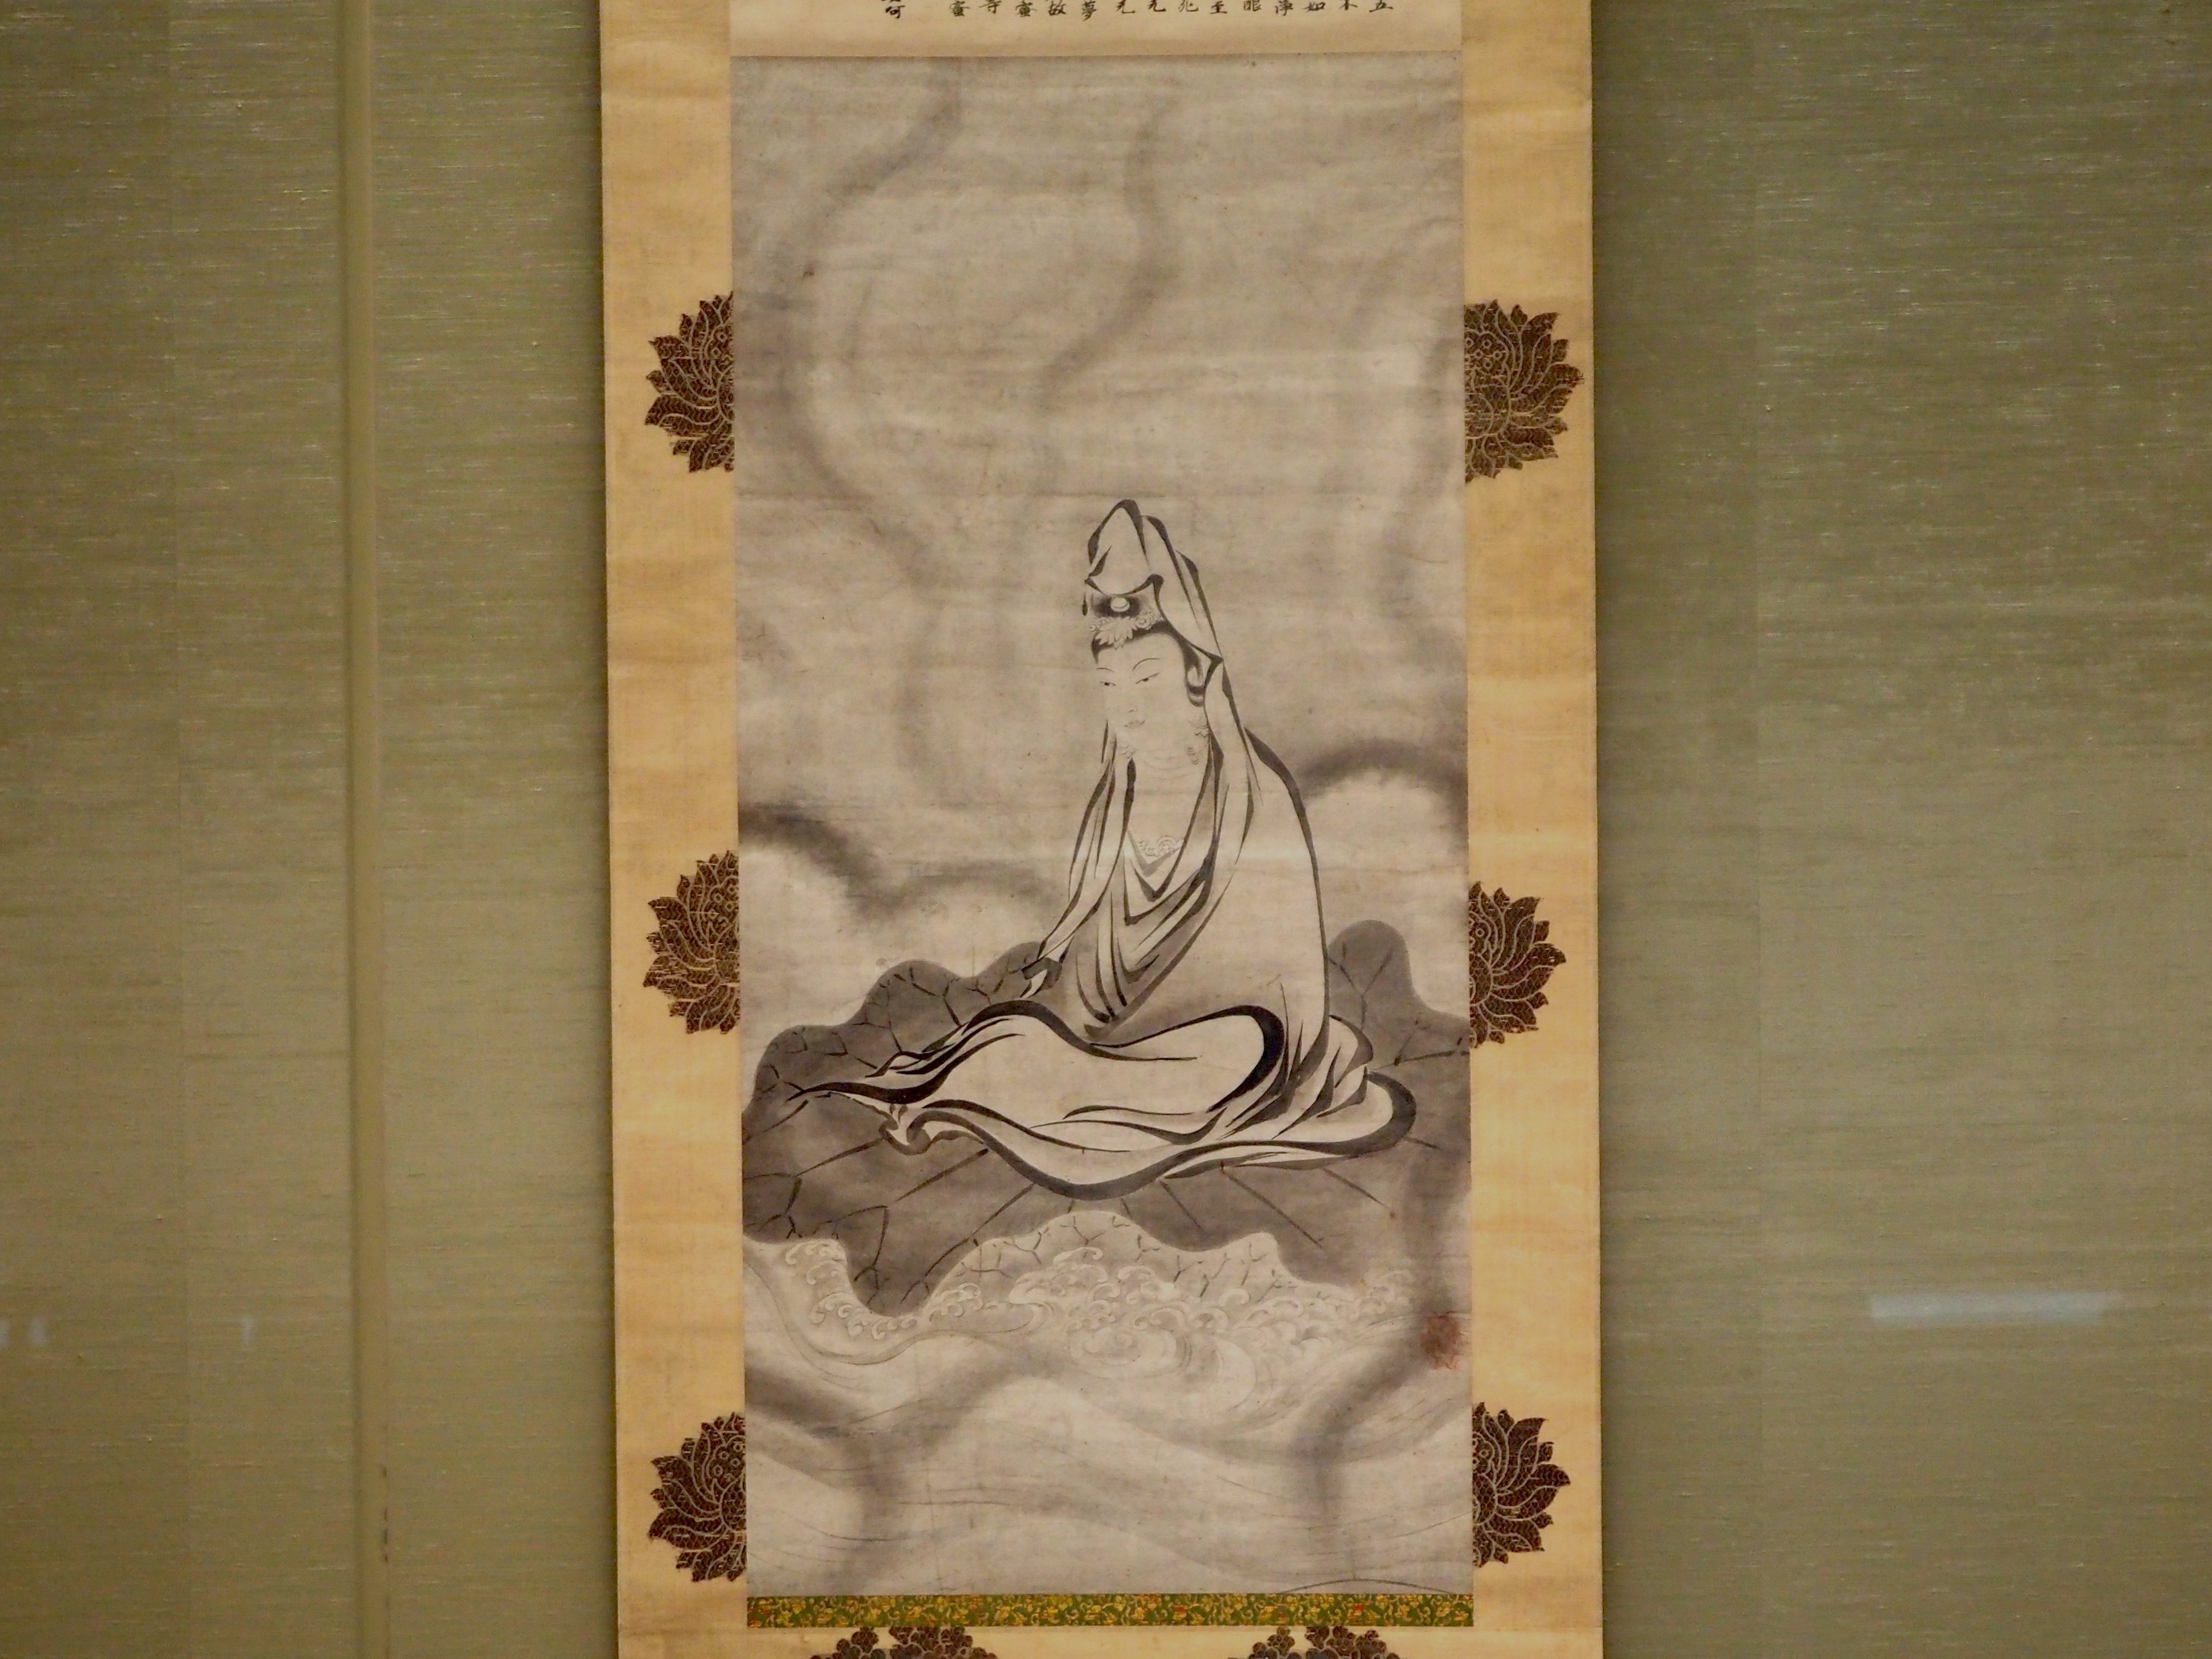 能阿弥さんが描いた《白衣観音図》ほか、仏画の世界へ潜入してみた